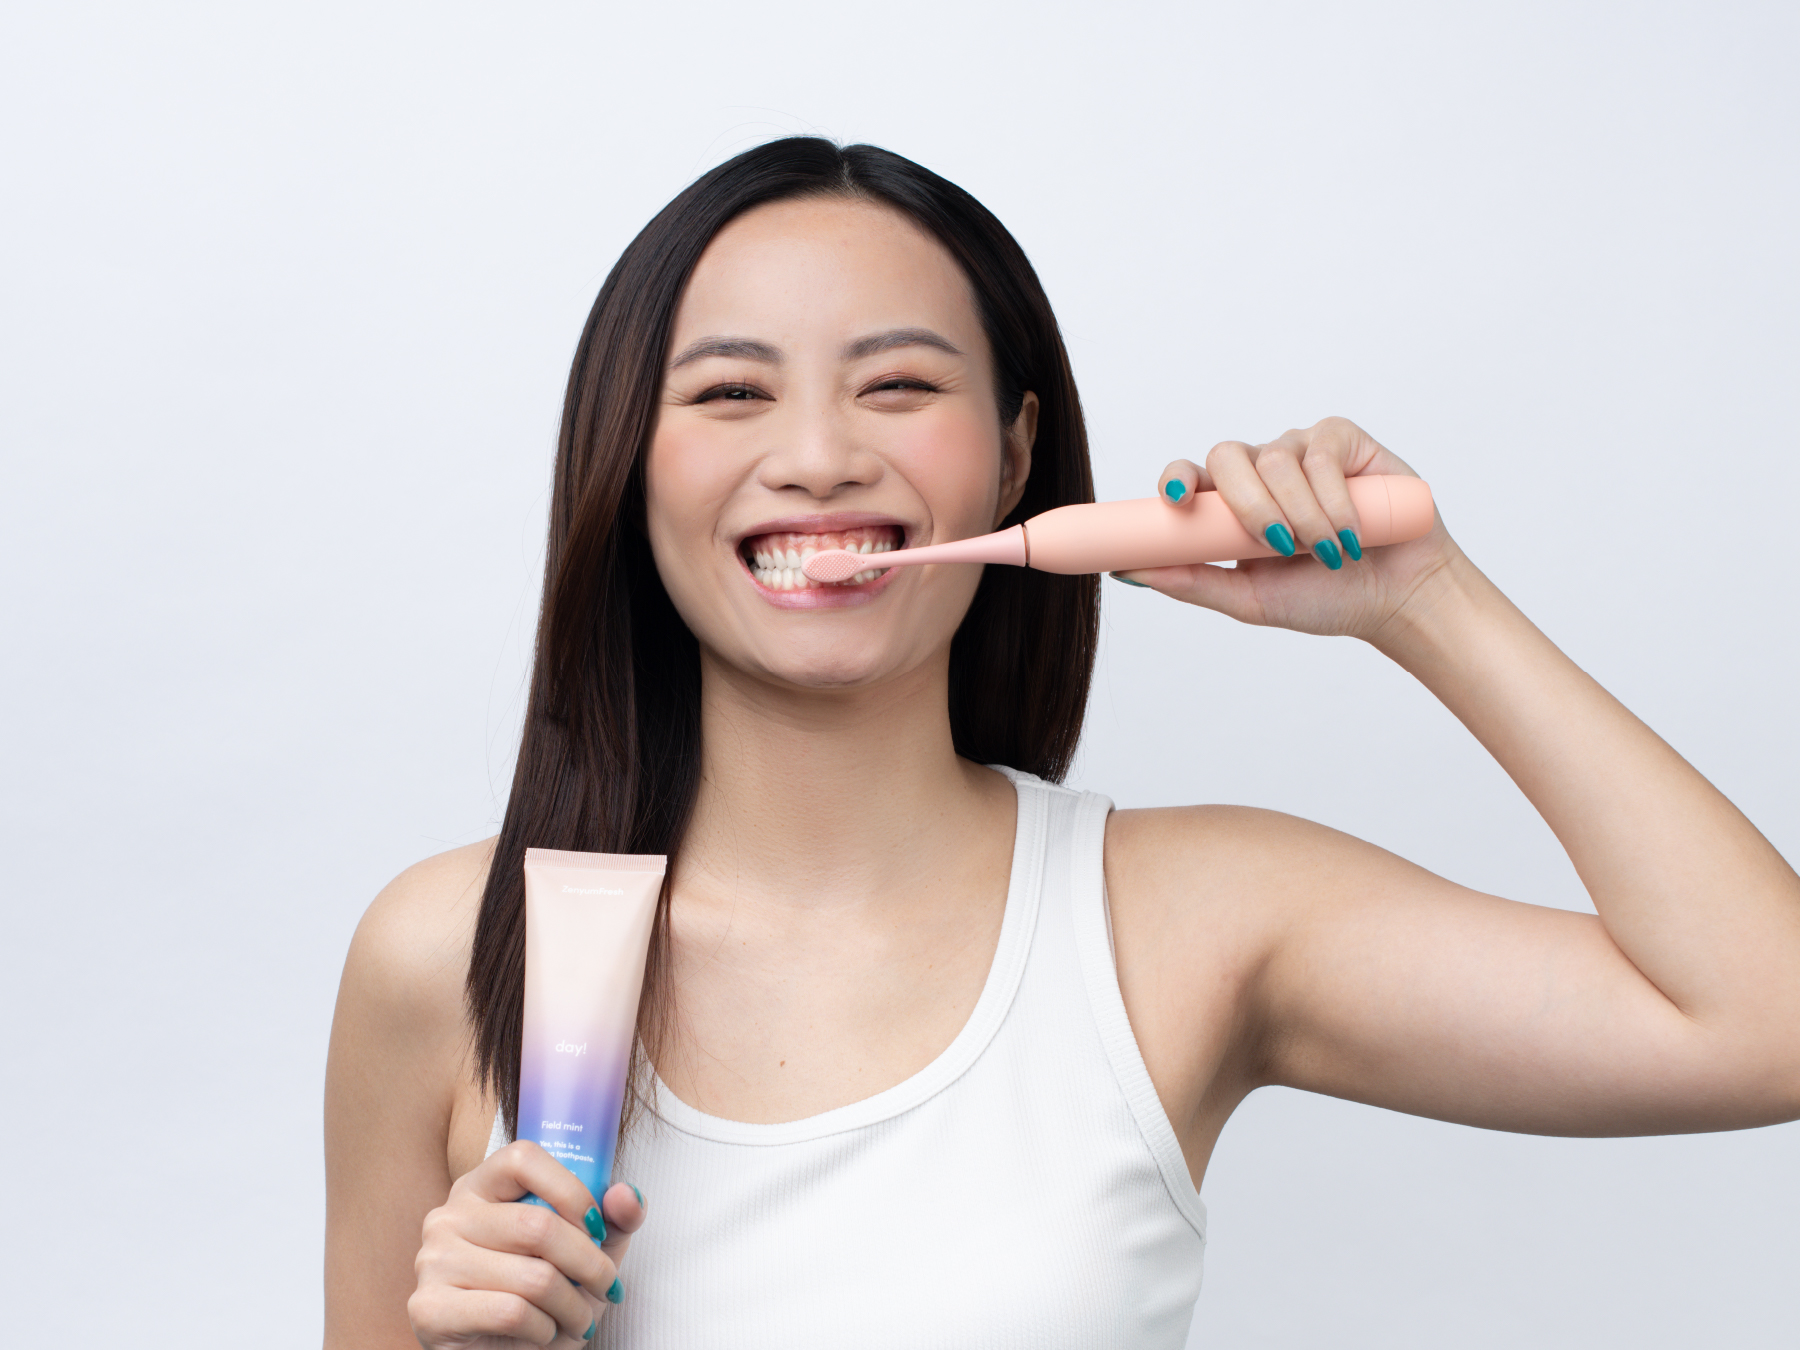 Girl brushing her teeth with ZenyumSonic Toothbrush